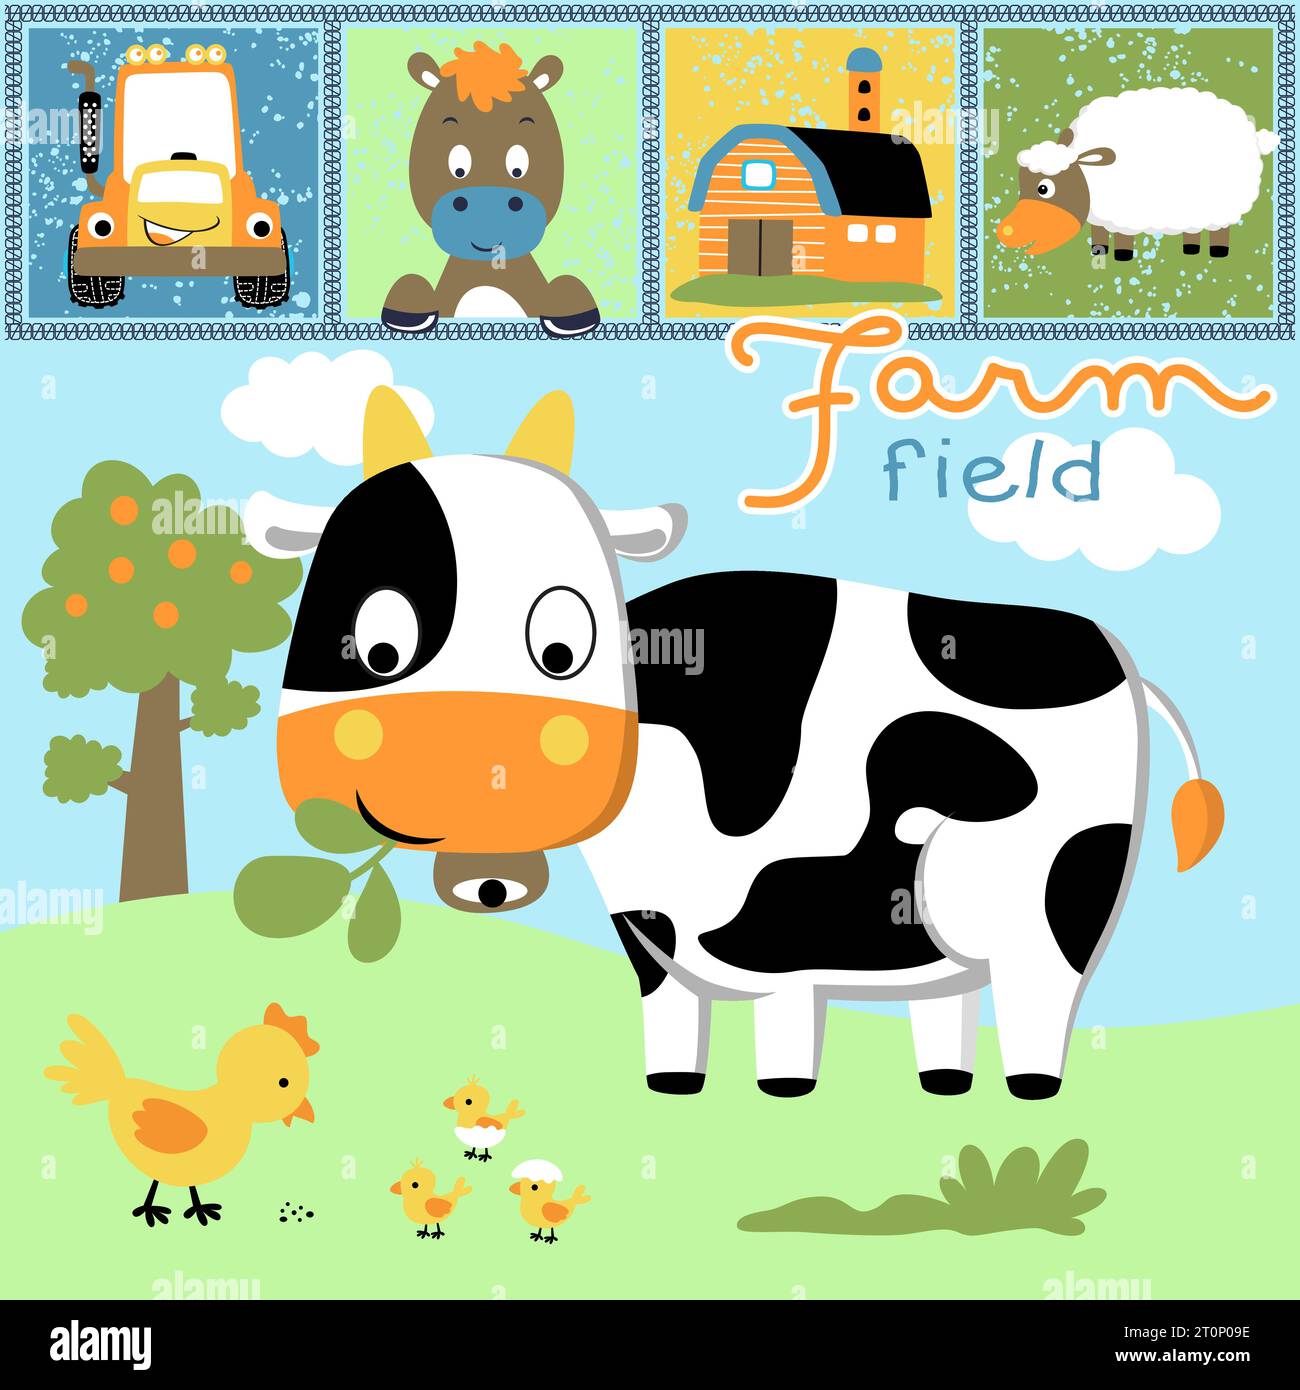 Vektor-Illustration von lustigen Bauernhoftieren Cartoon mit landwirtschaftlichen Elementen Stock Vektor